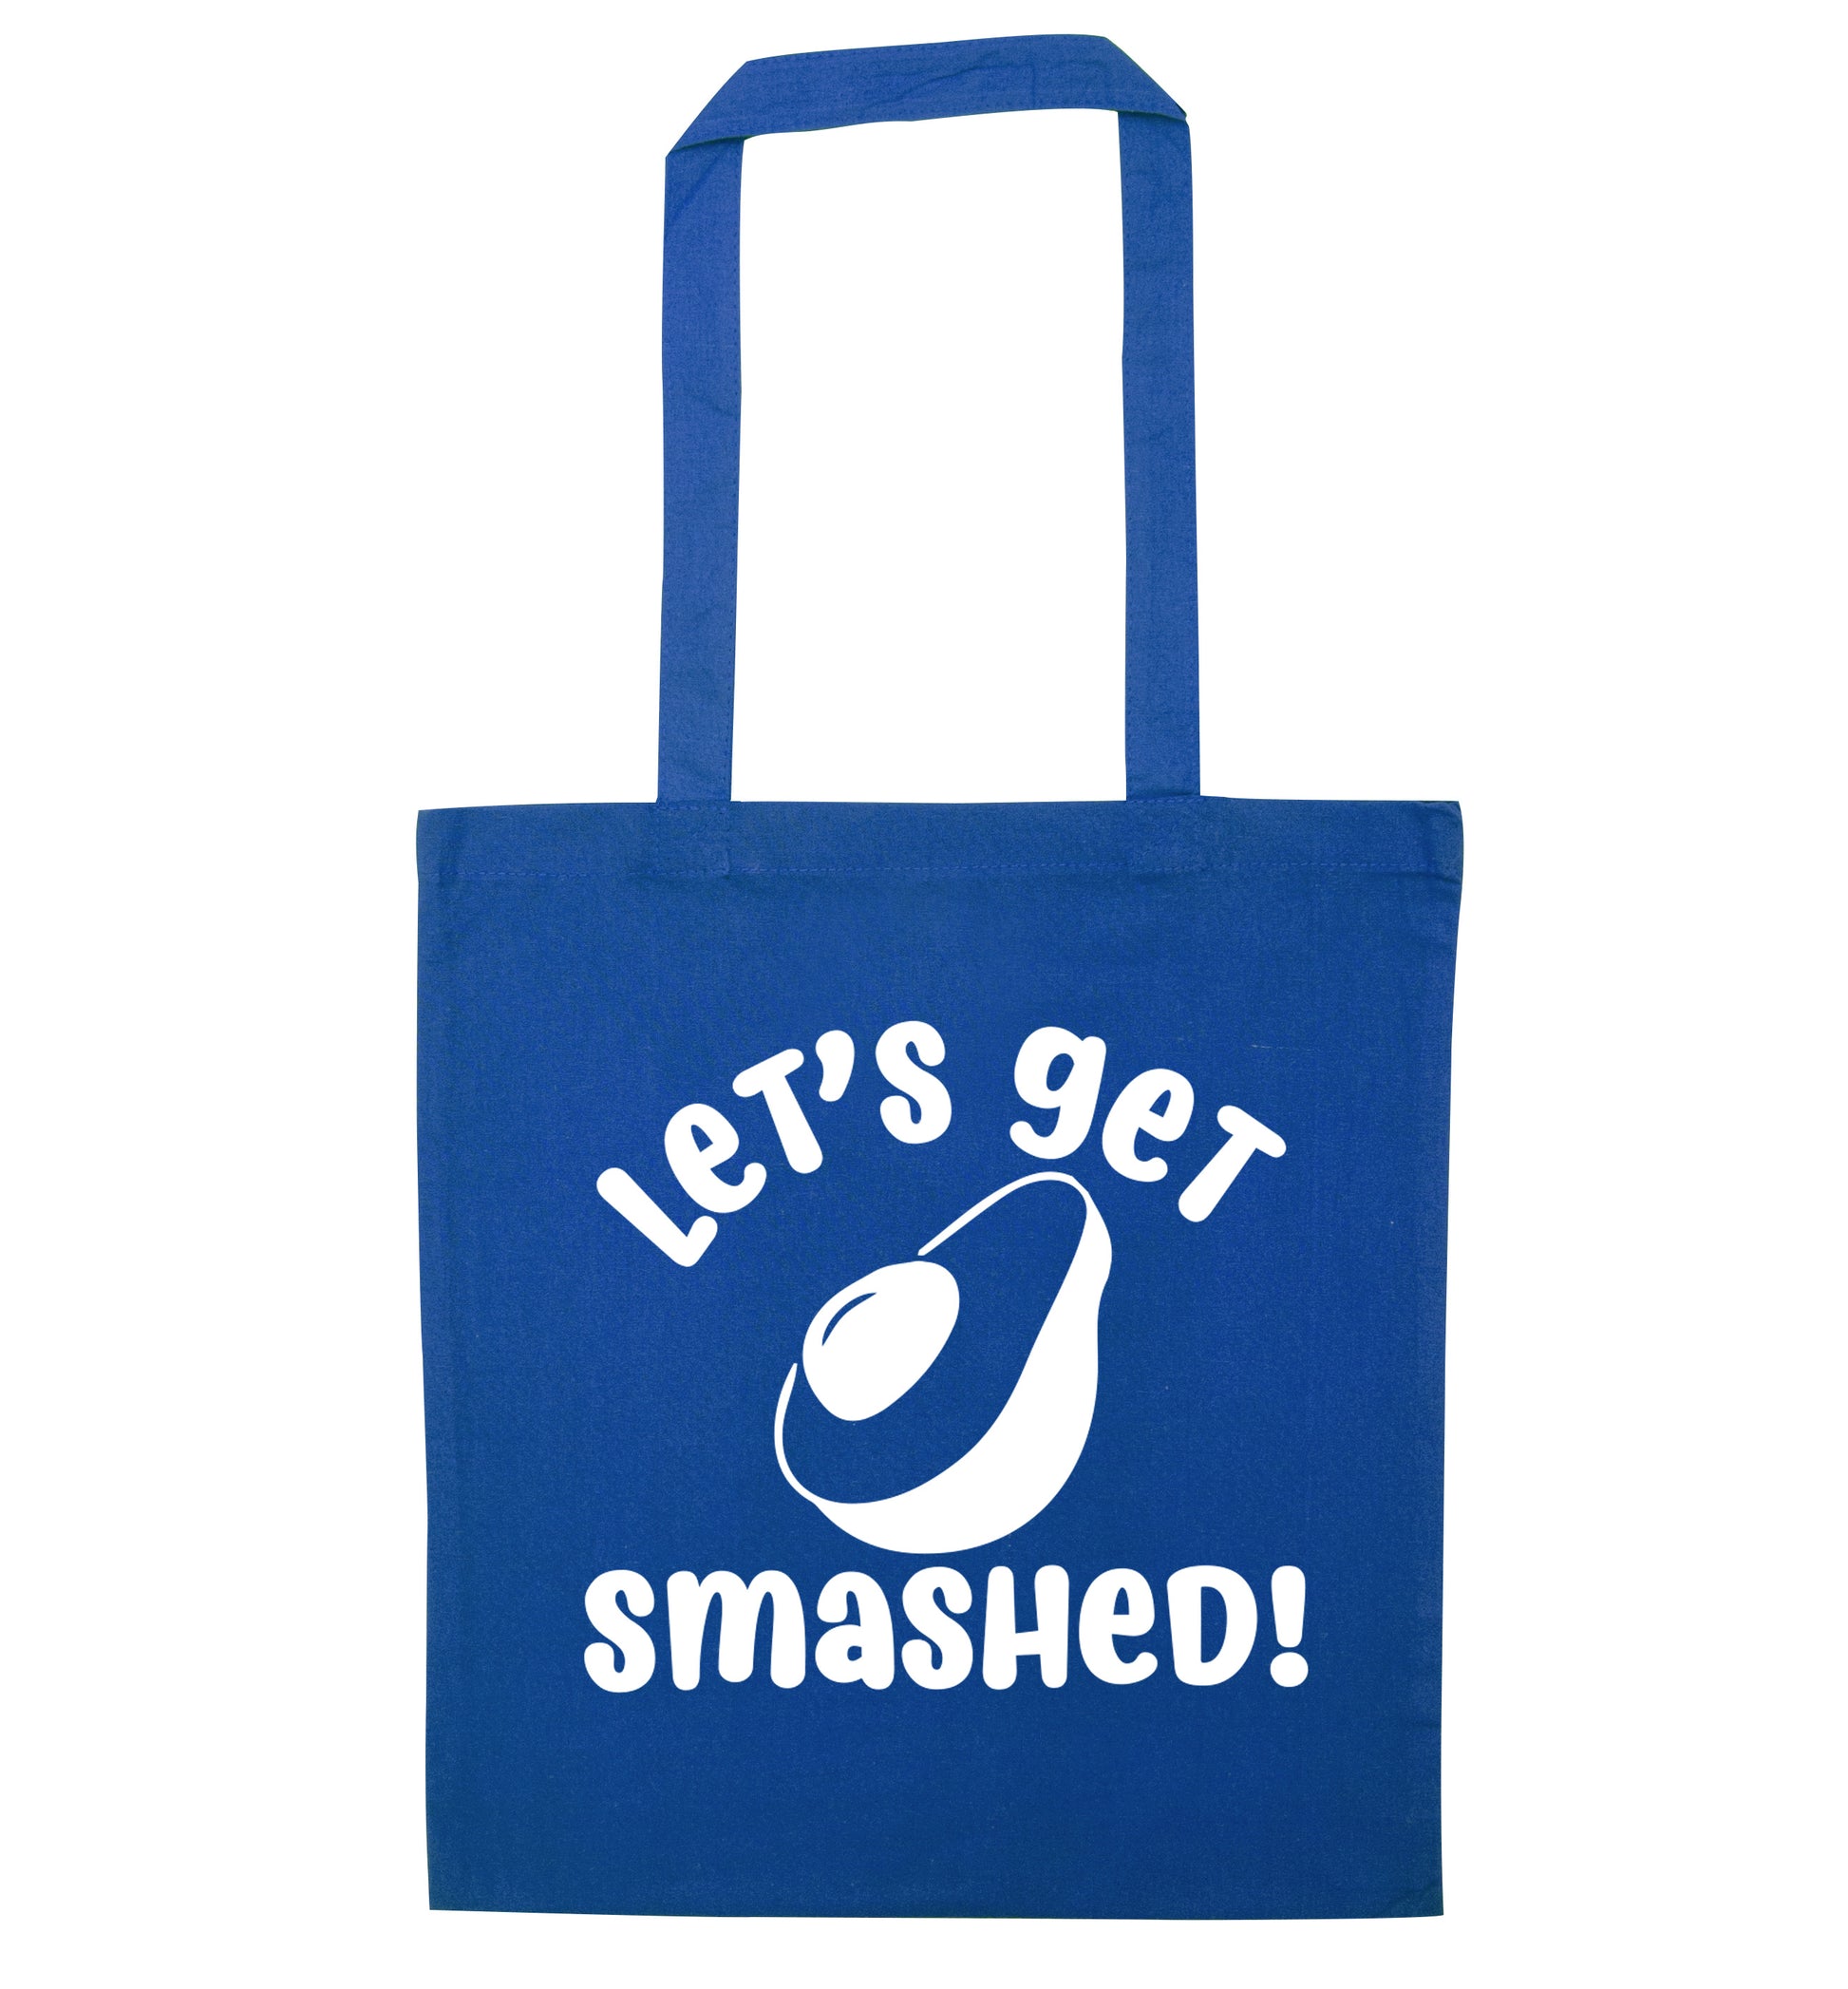 Let's get smashed blue tote bag